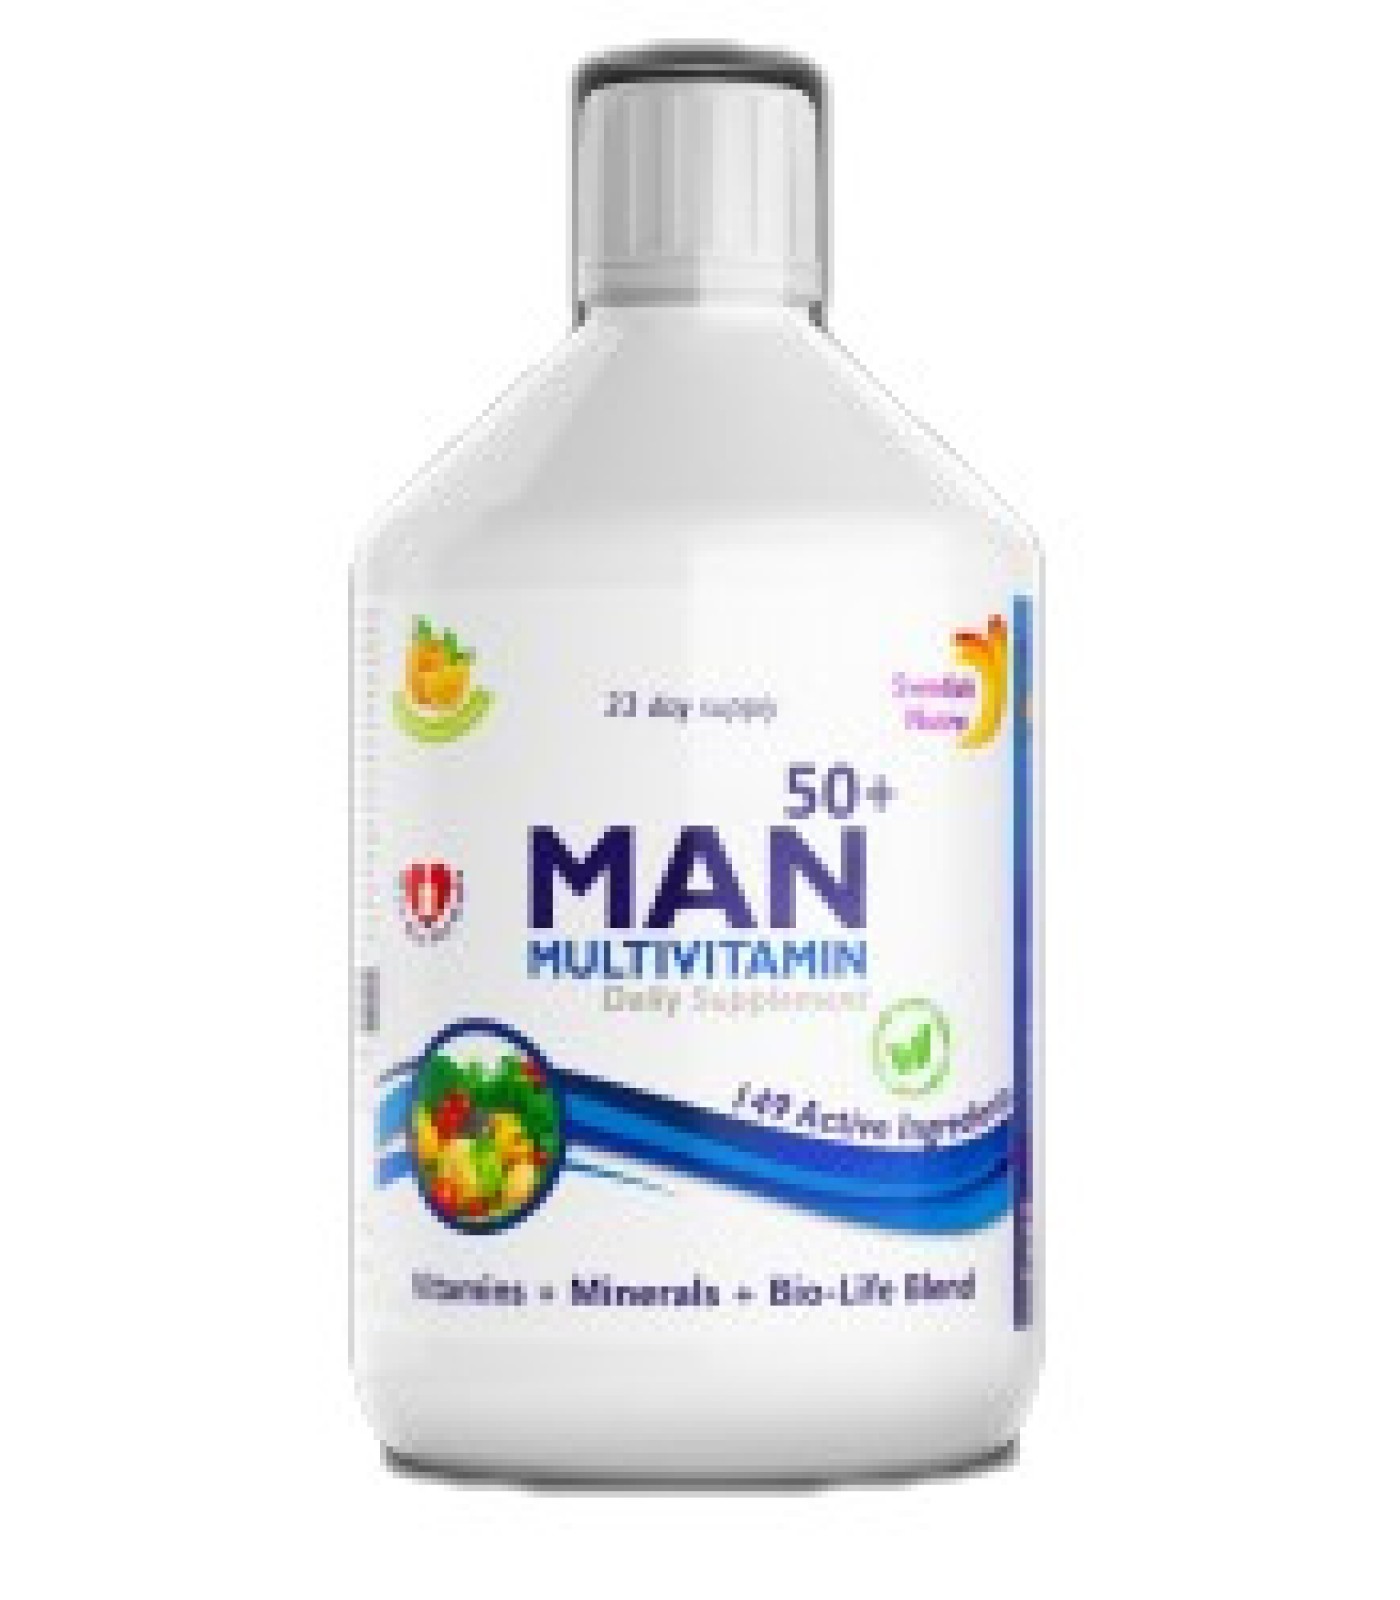 Swedish Nutra - Man Multivitamin 50+ | Vitamins + Minerals + Bio-Life Blend / 500 мл, 33 дози​